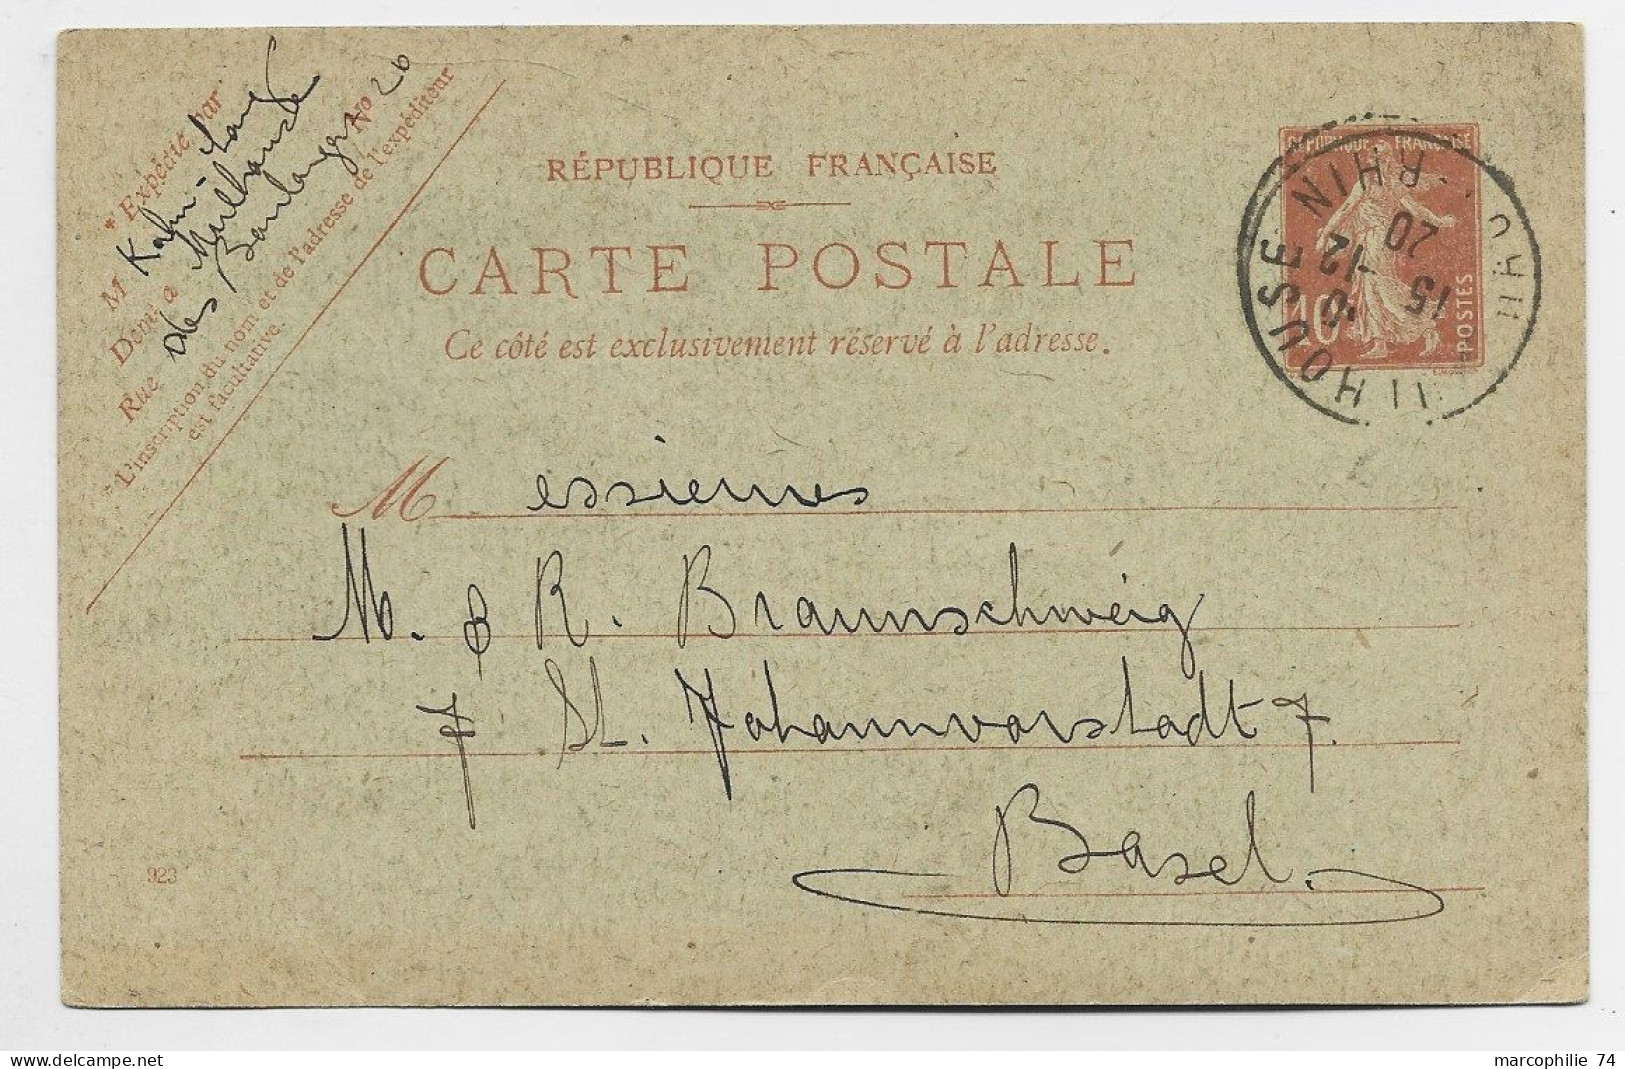 ENTIER SEMEUSE 10C CARTE POSTALE MULHOUSE HAUT RHIN 15.12.1920 POUR BASEL SUISSE - Cartes Postales Types Et TSC (avant 1995)